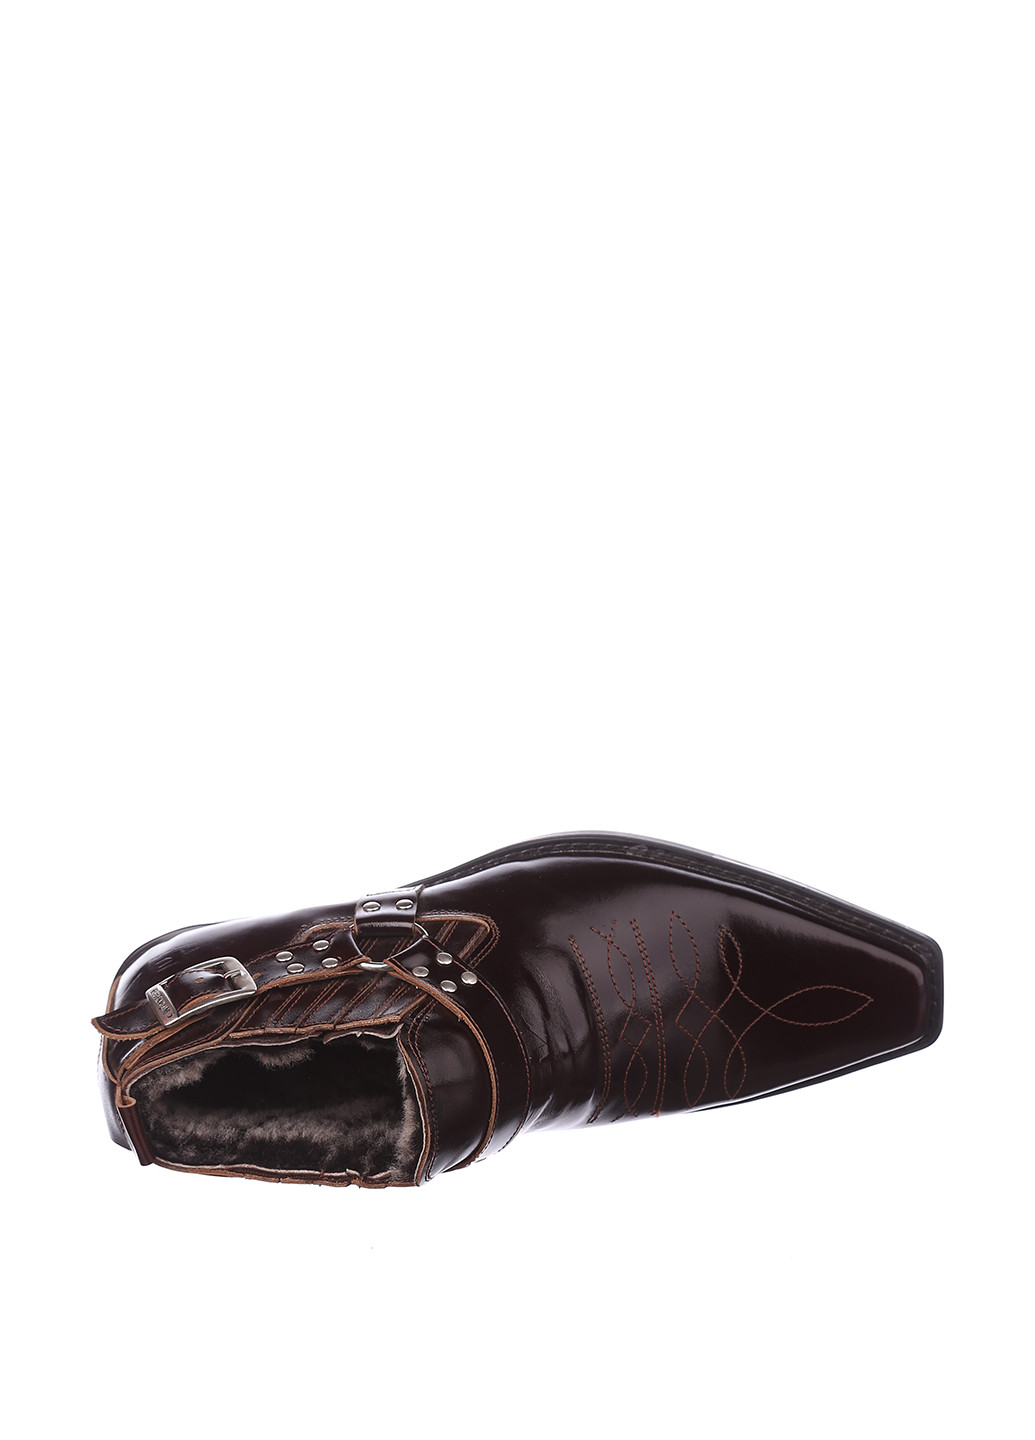 Шоколадные зимние ботинки казаки Broni